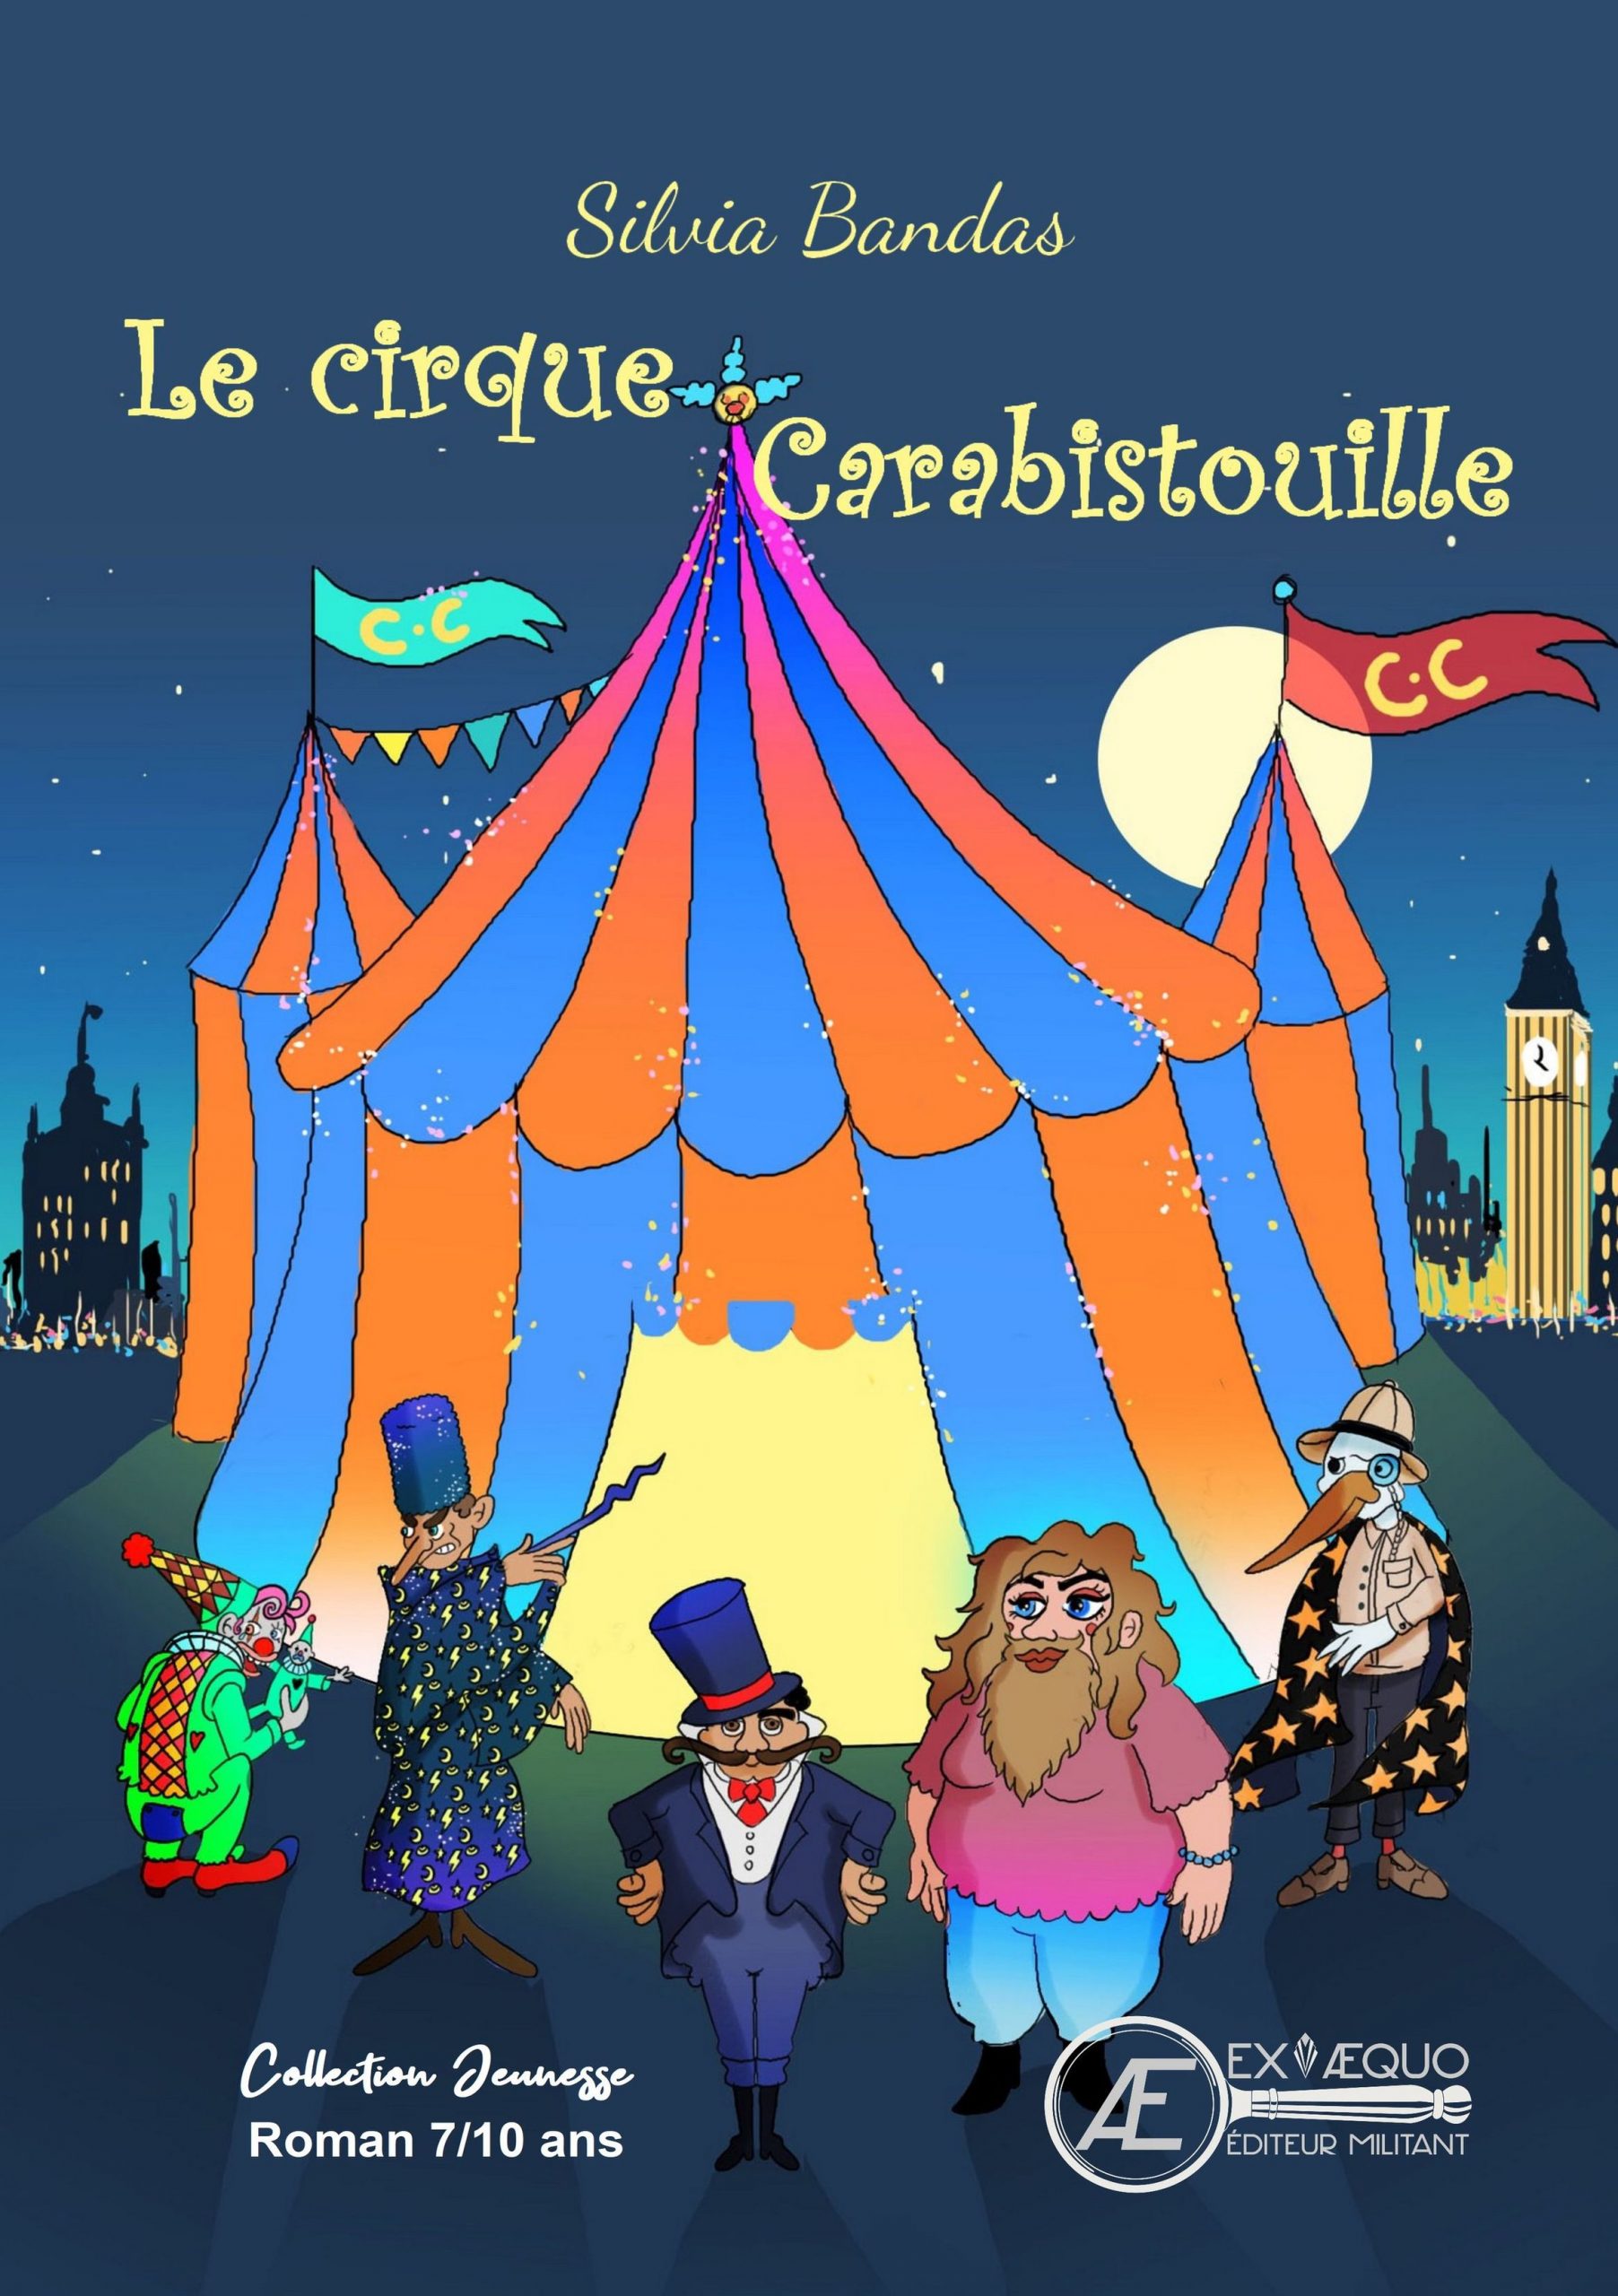 You are currently viewing Le cirque Carabistouille, de Silvia Bandas